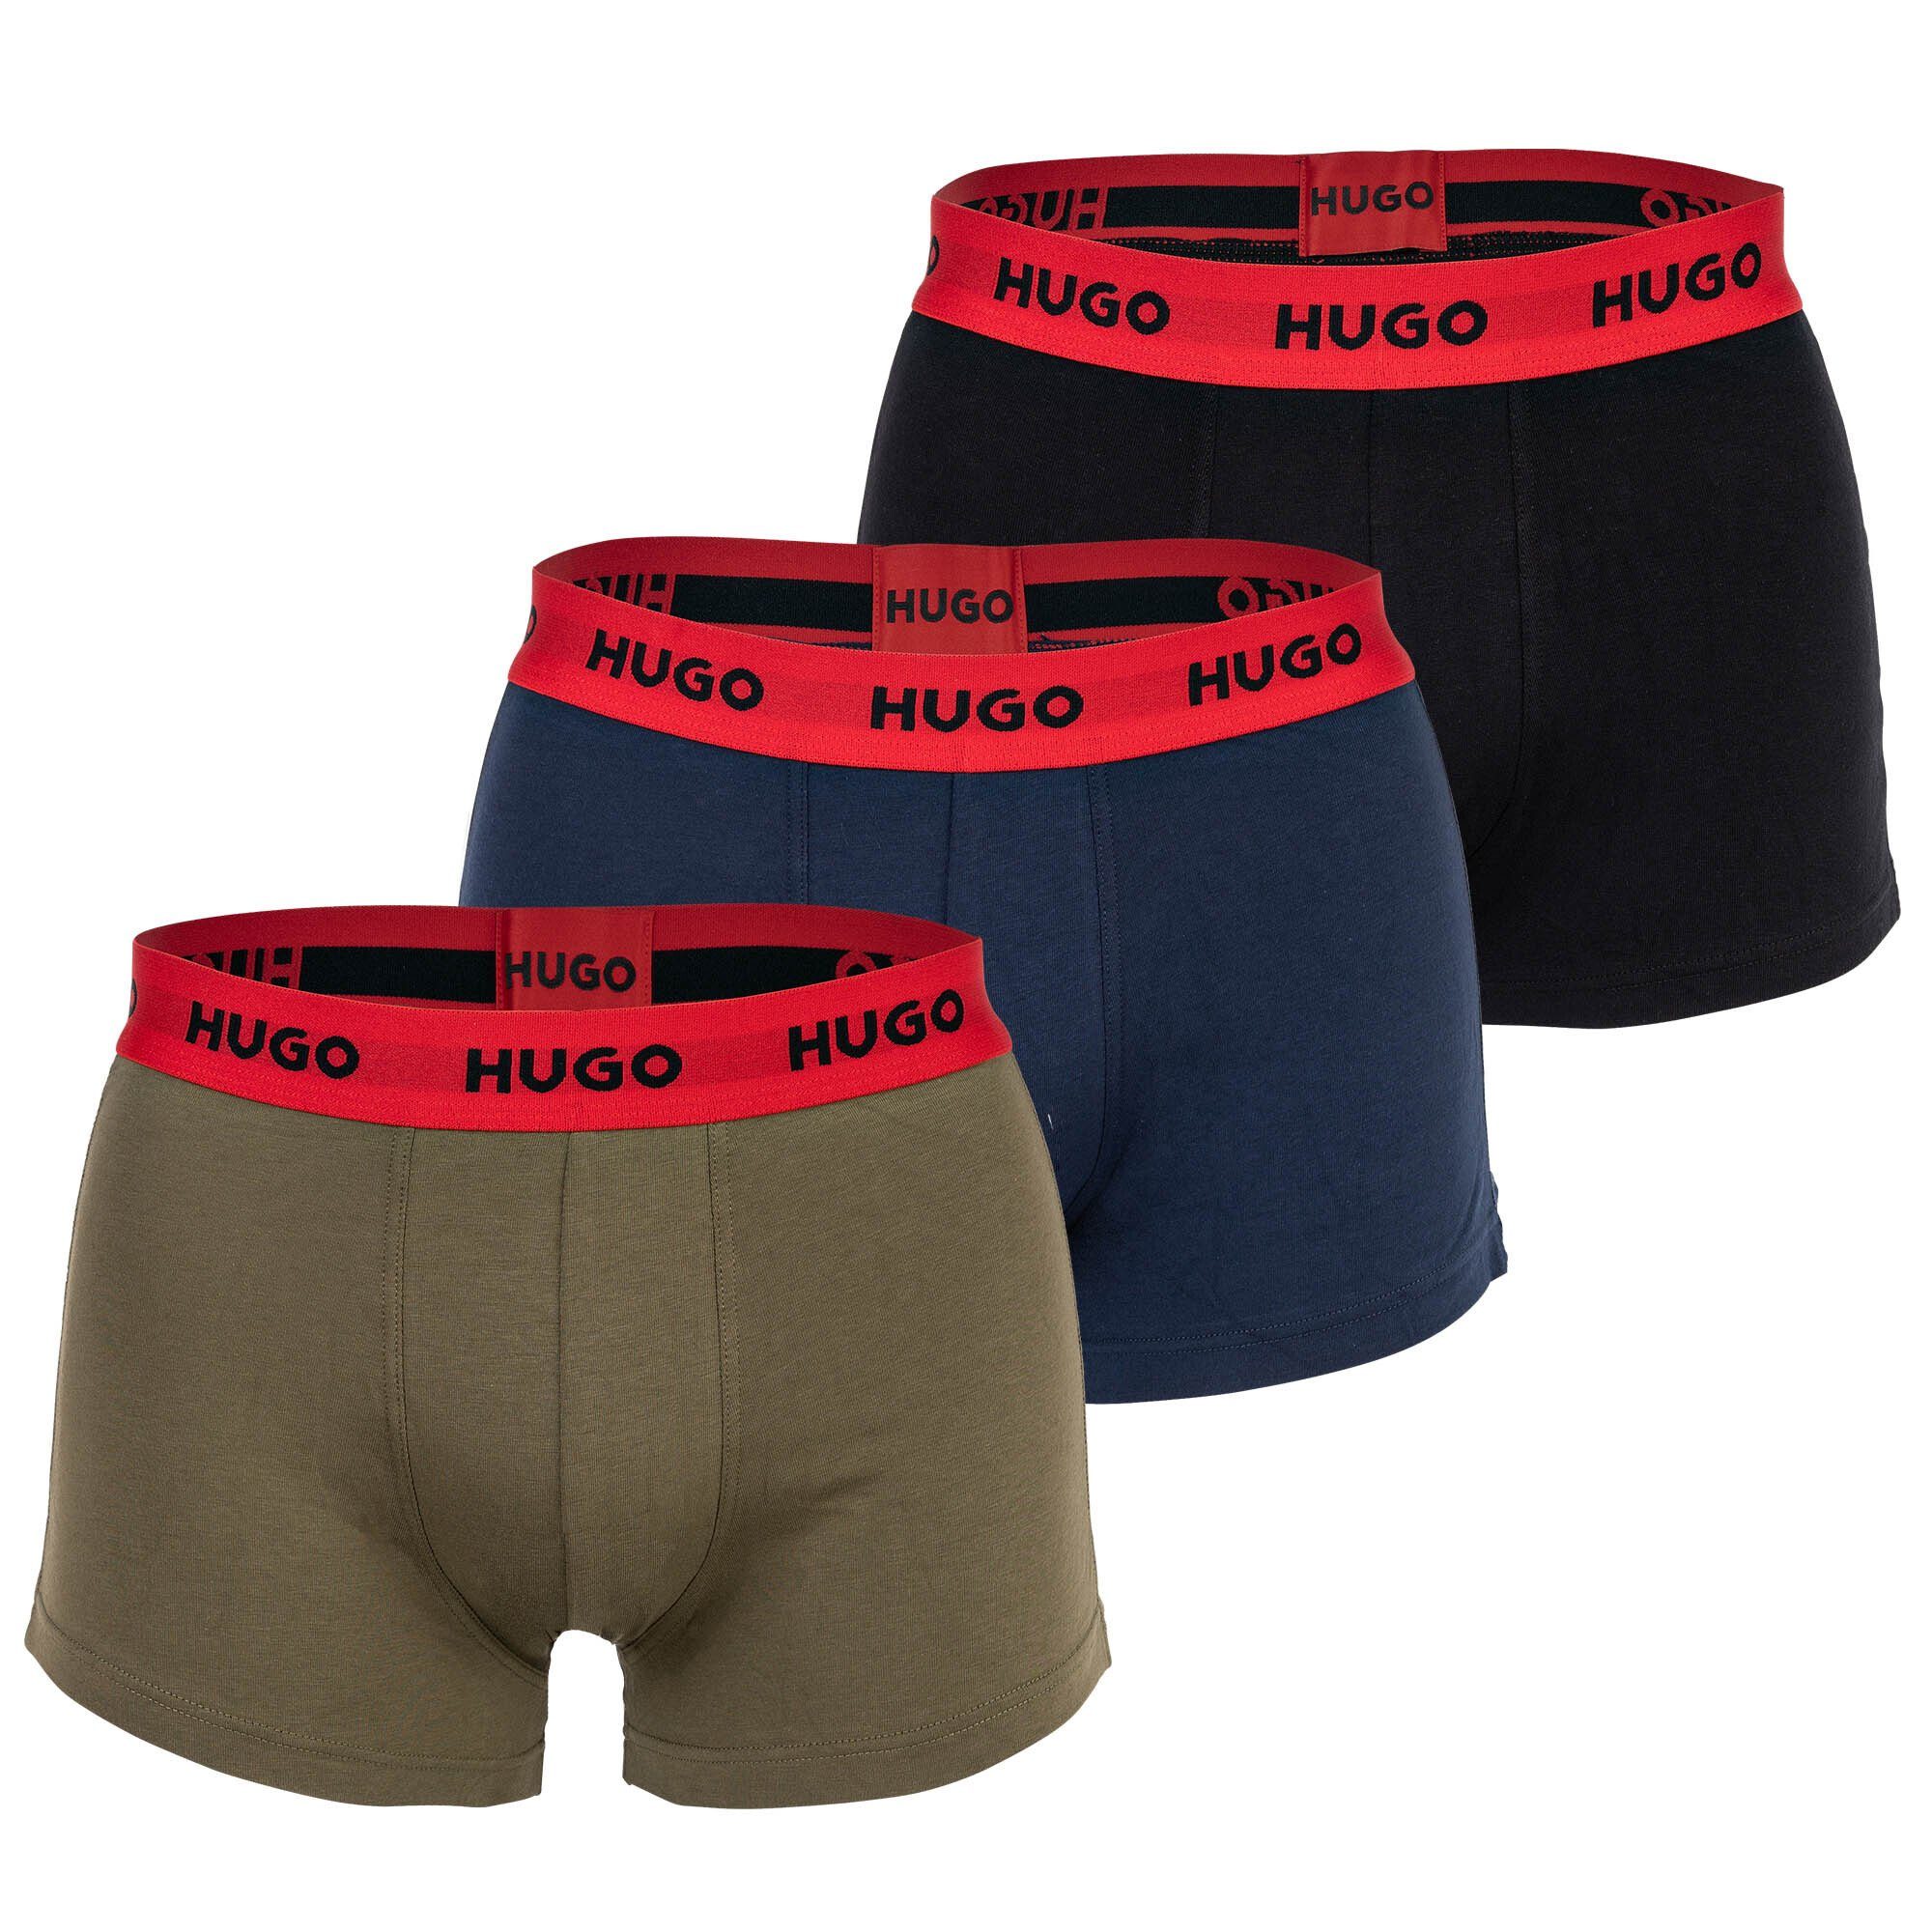 HUGO Boxer Herren Boxer Shorts, 3er Pack - Trunks Triplet